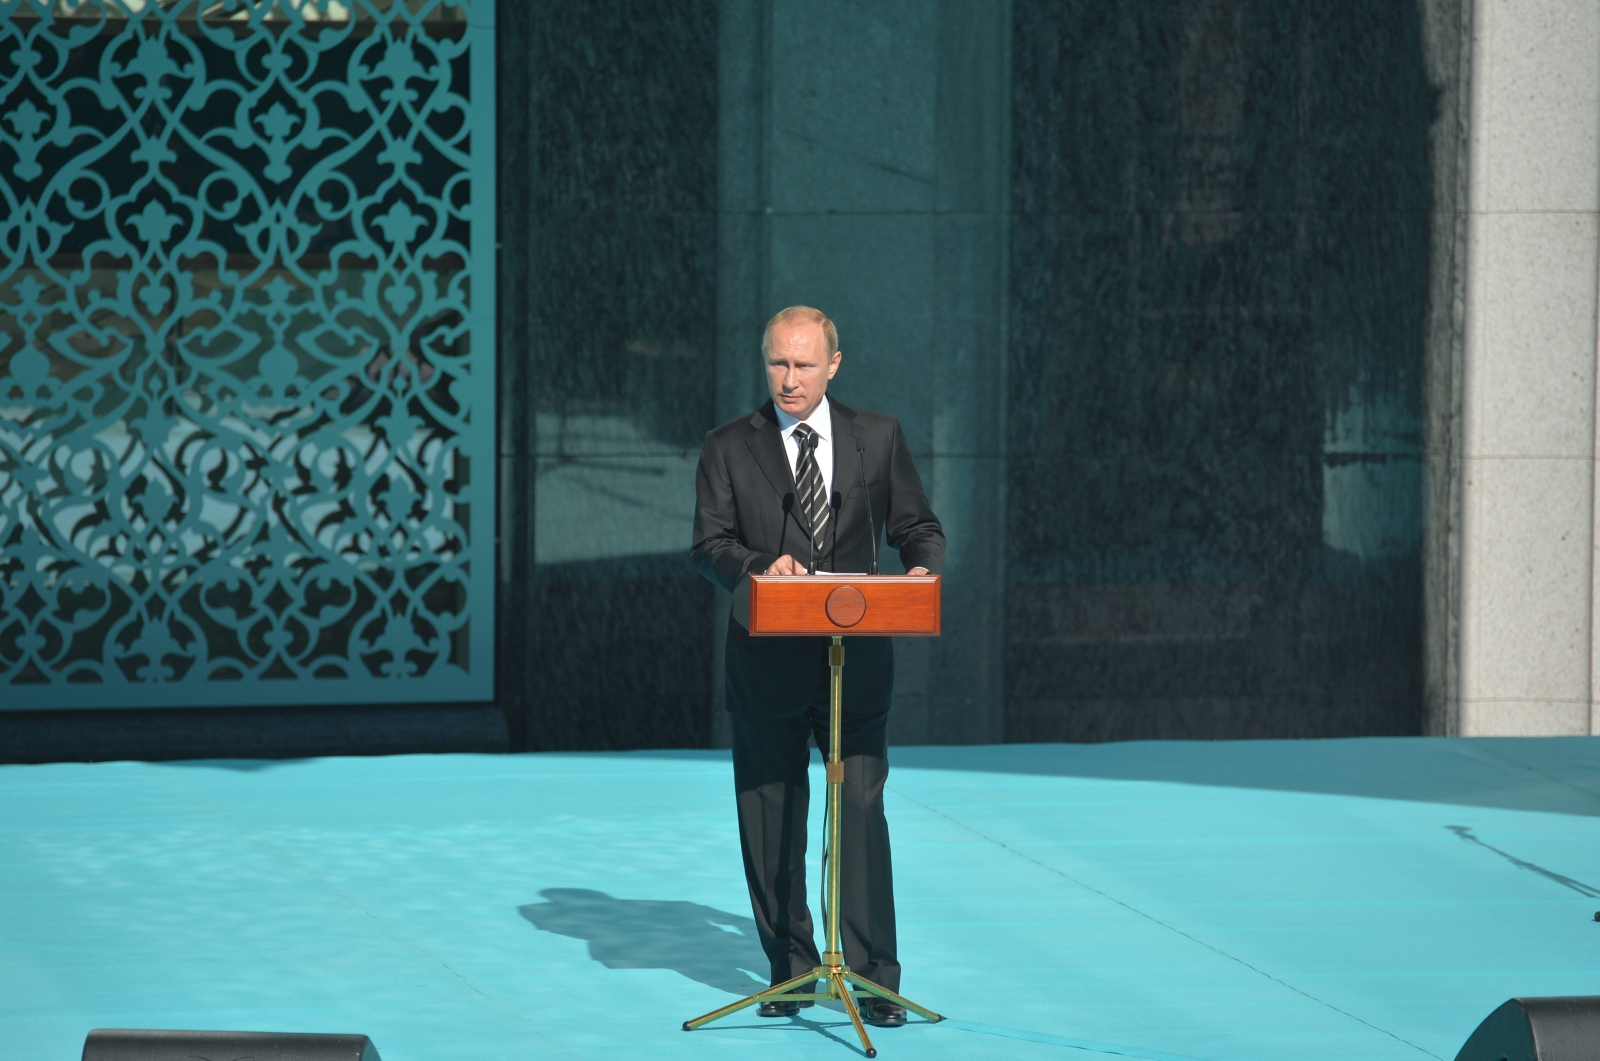 Władimir Putin otworzył meczet w Moskwie